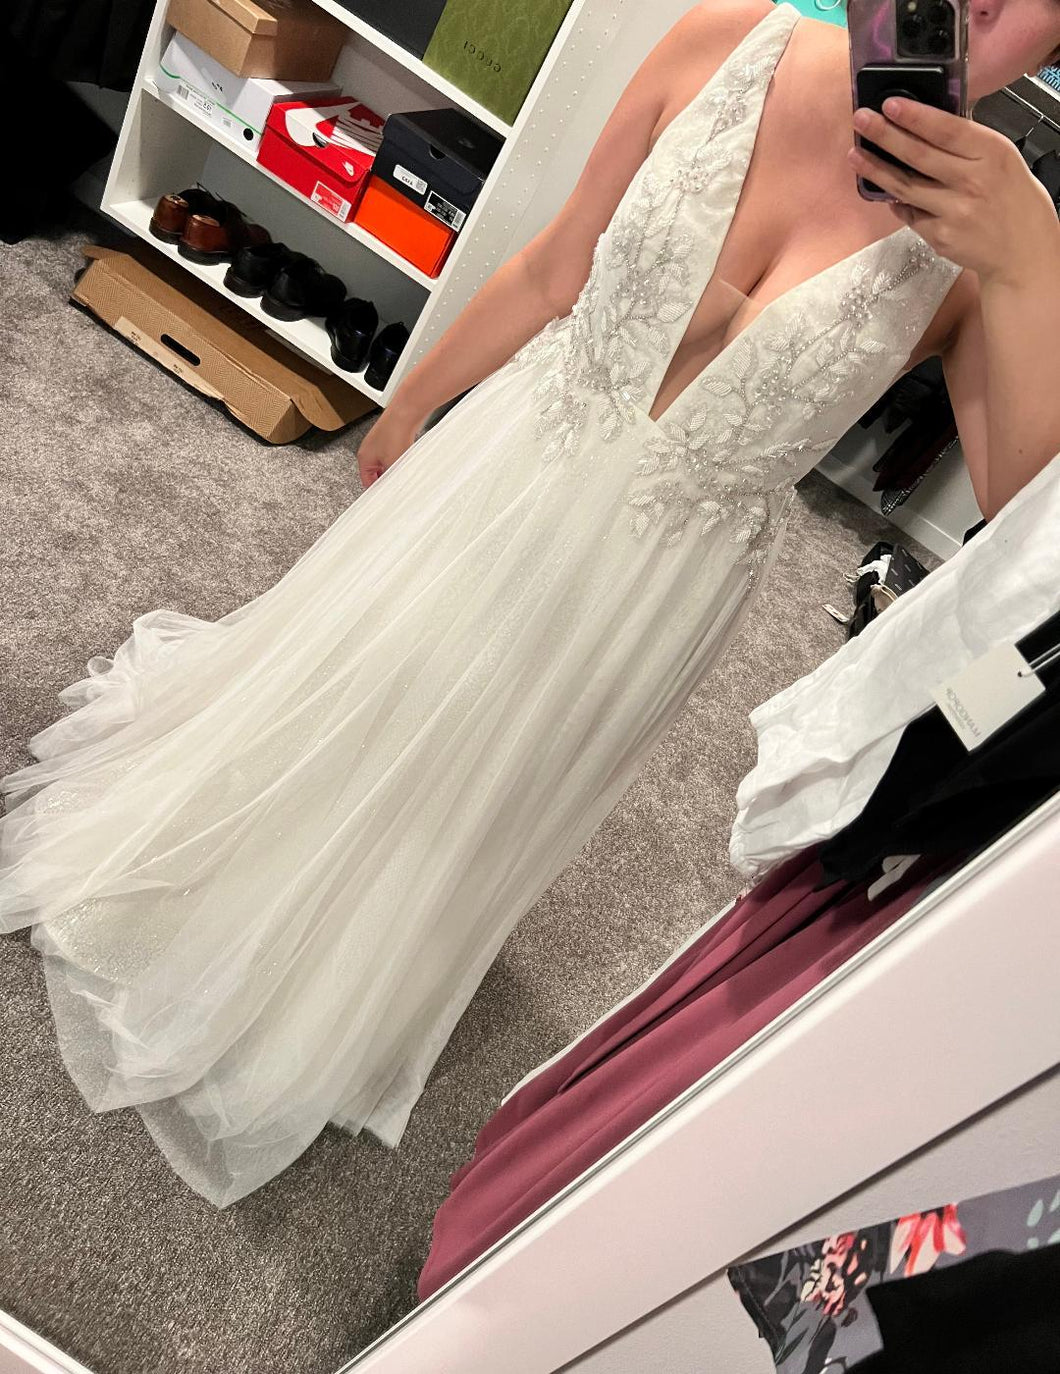 Lazaro 'Alma (3902)' wedding dress size-08 NEW